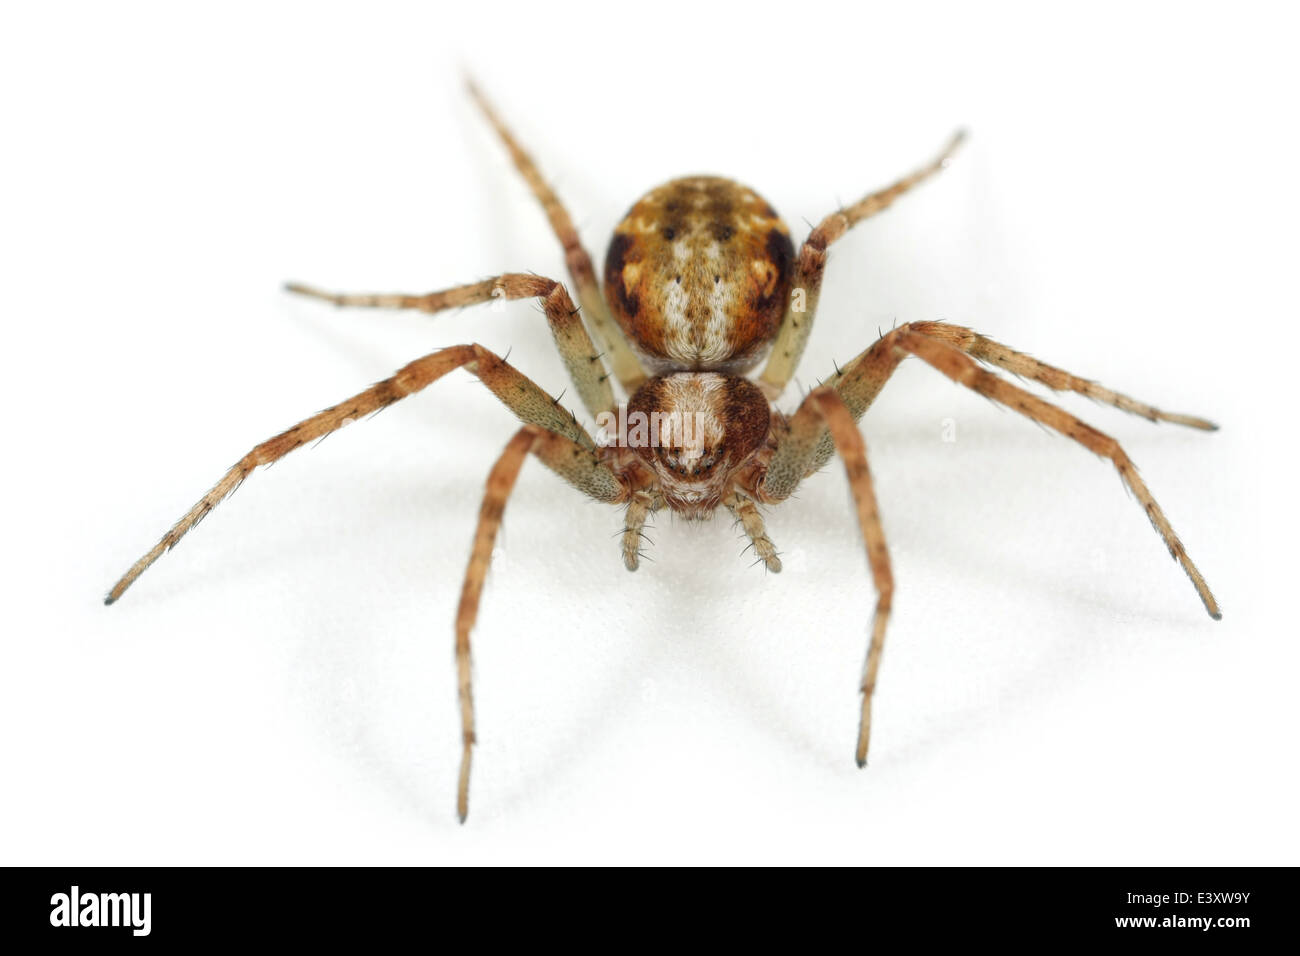 Weibliche Rasen laufen-Spider (Philodromus Cespitum), Teil der Familie Philodromidae - Running Krabben Spinnen. Isoliert auf weiss. Stockfoto